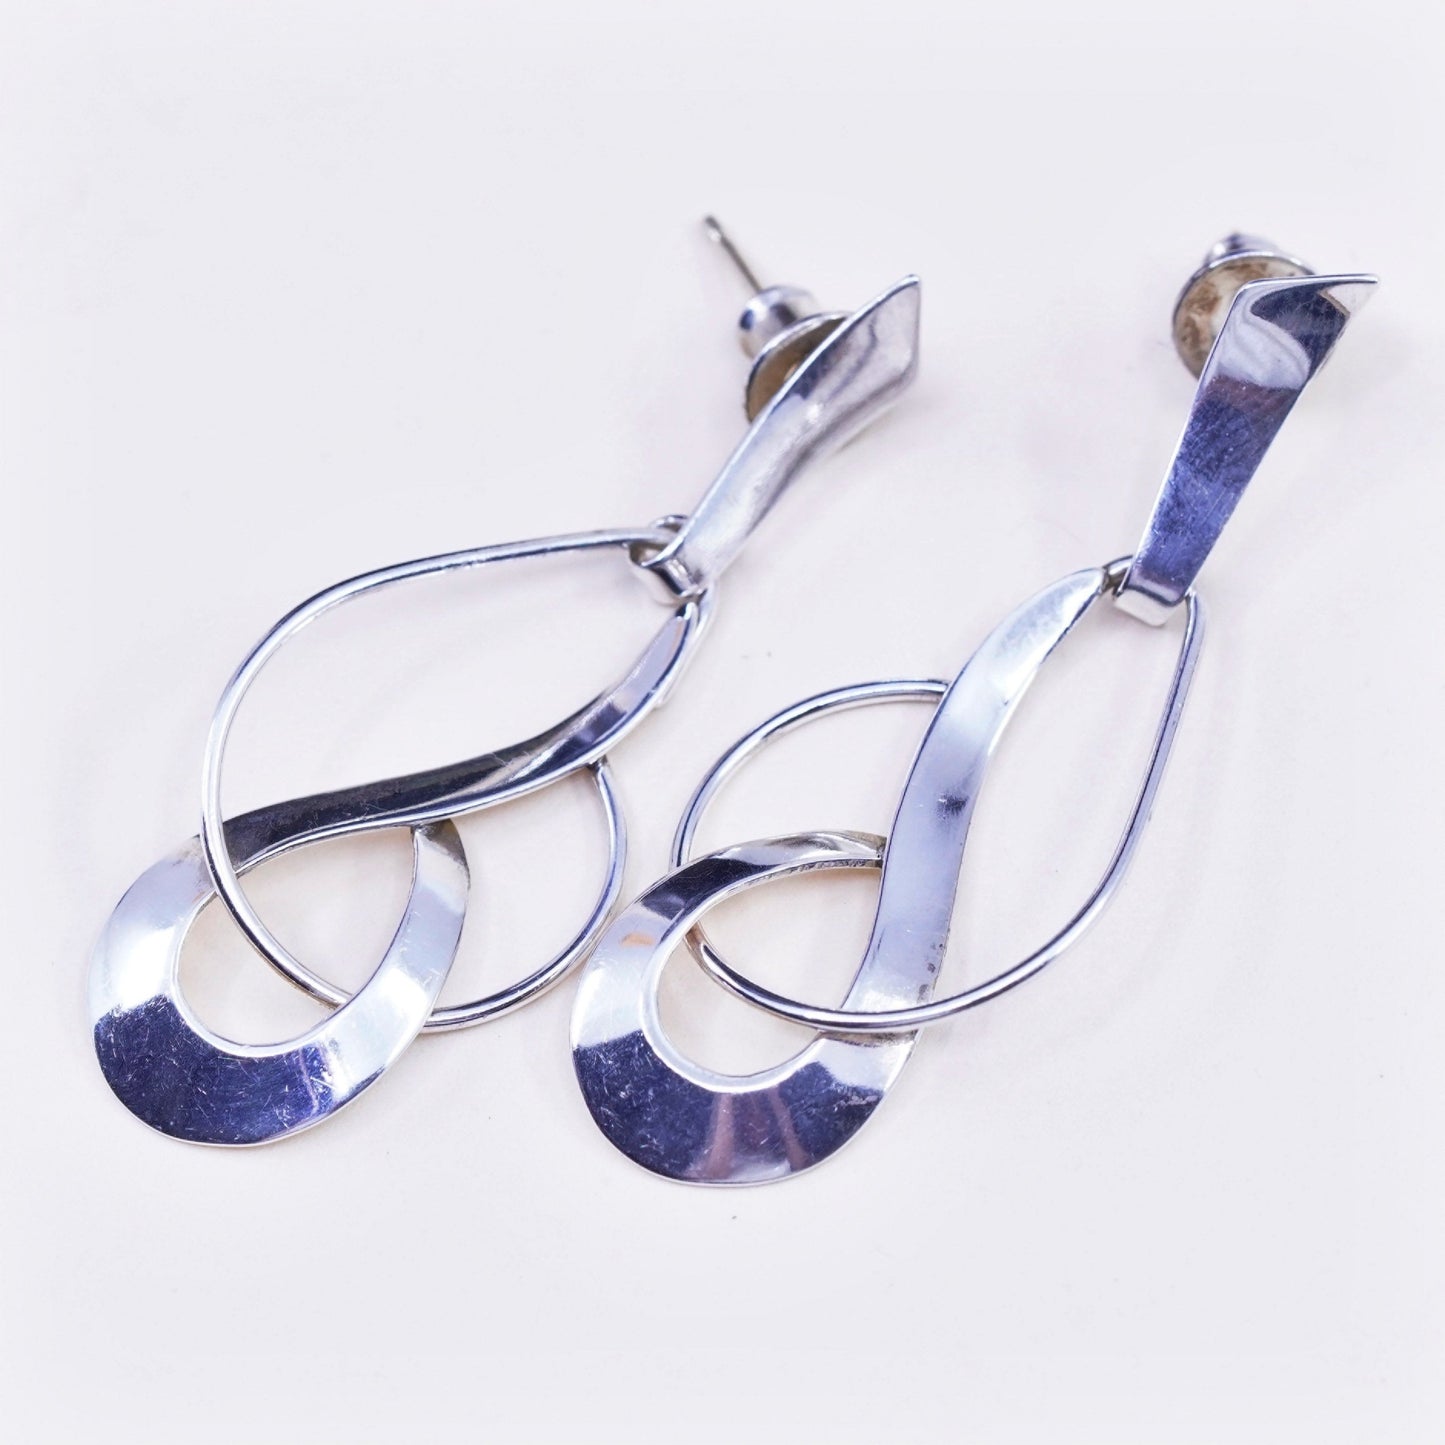 Vintage sterling 925 silver loop earrings, minimalist teardrop 14K gold posts